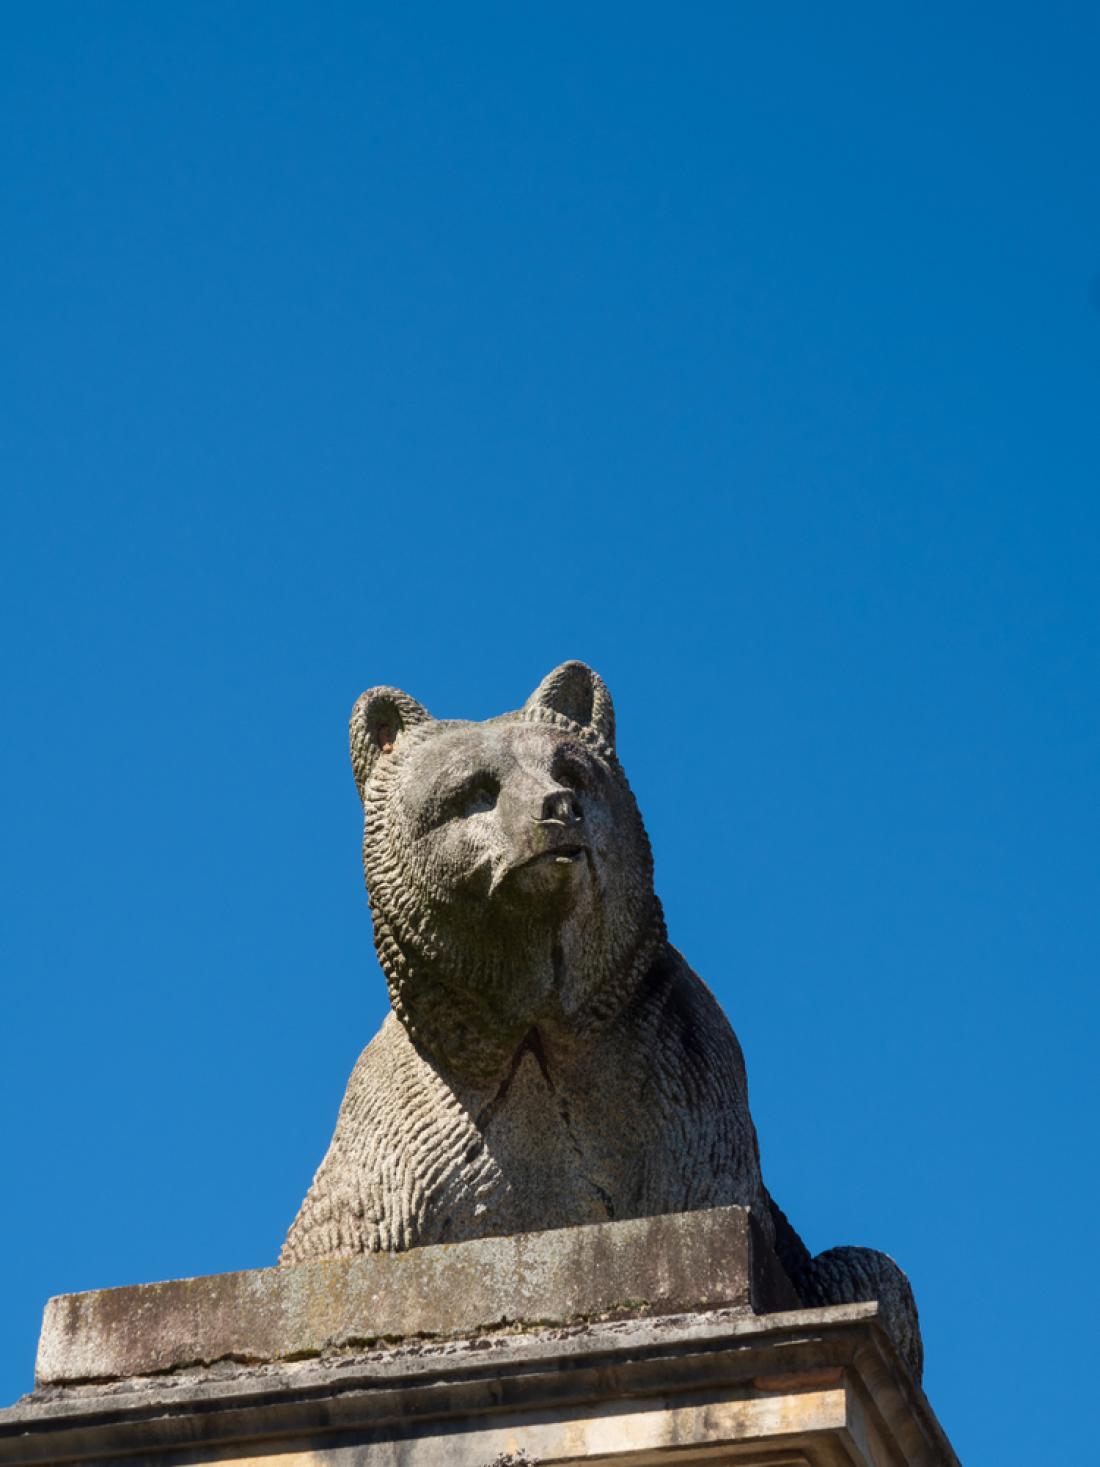 Medvedi vas v Bernu spremljajo na vsakem koraku. Foto: Kolf/Shutterstock